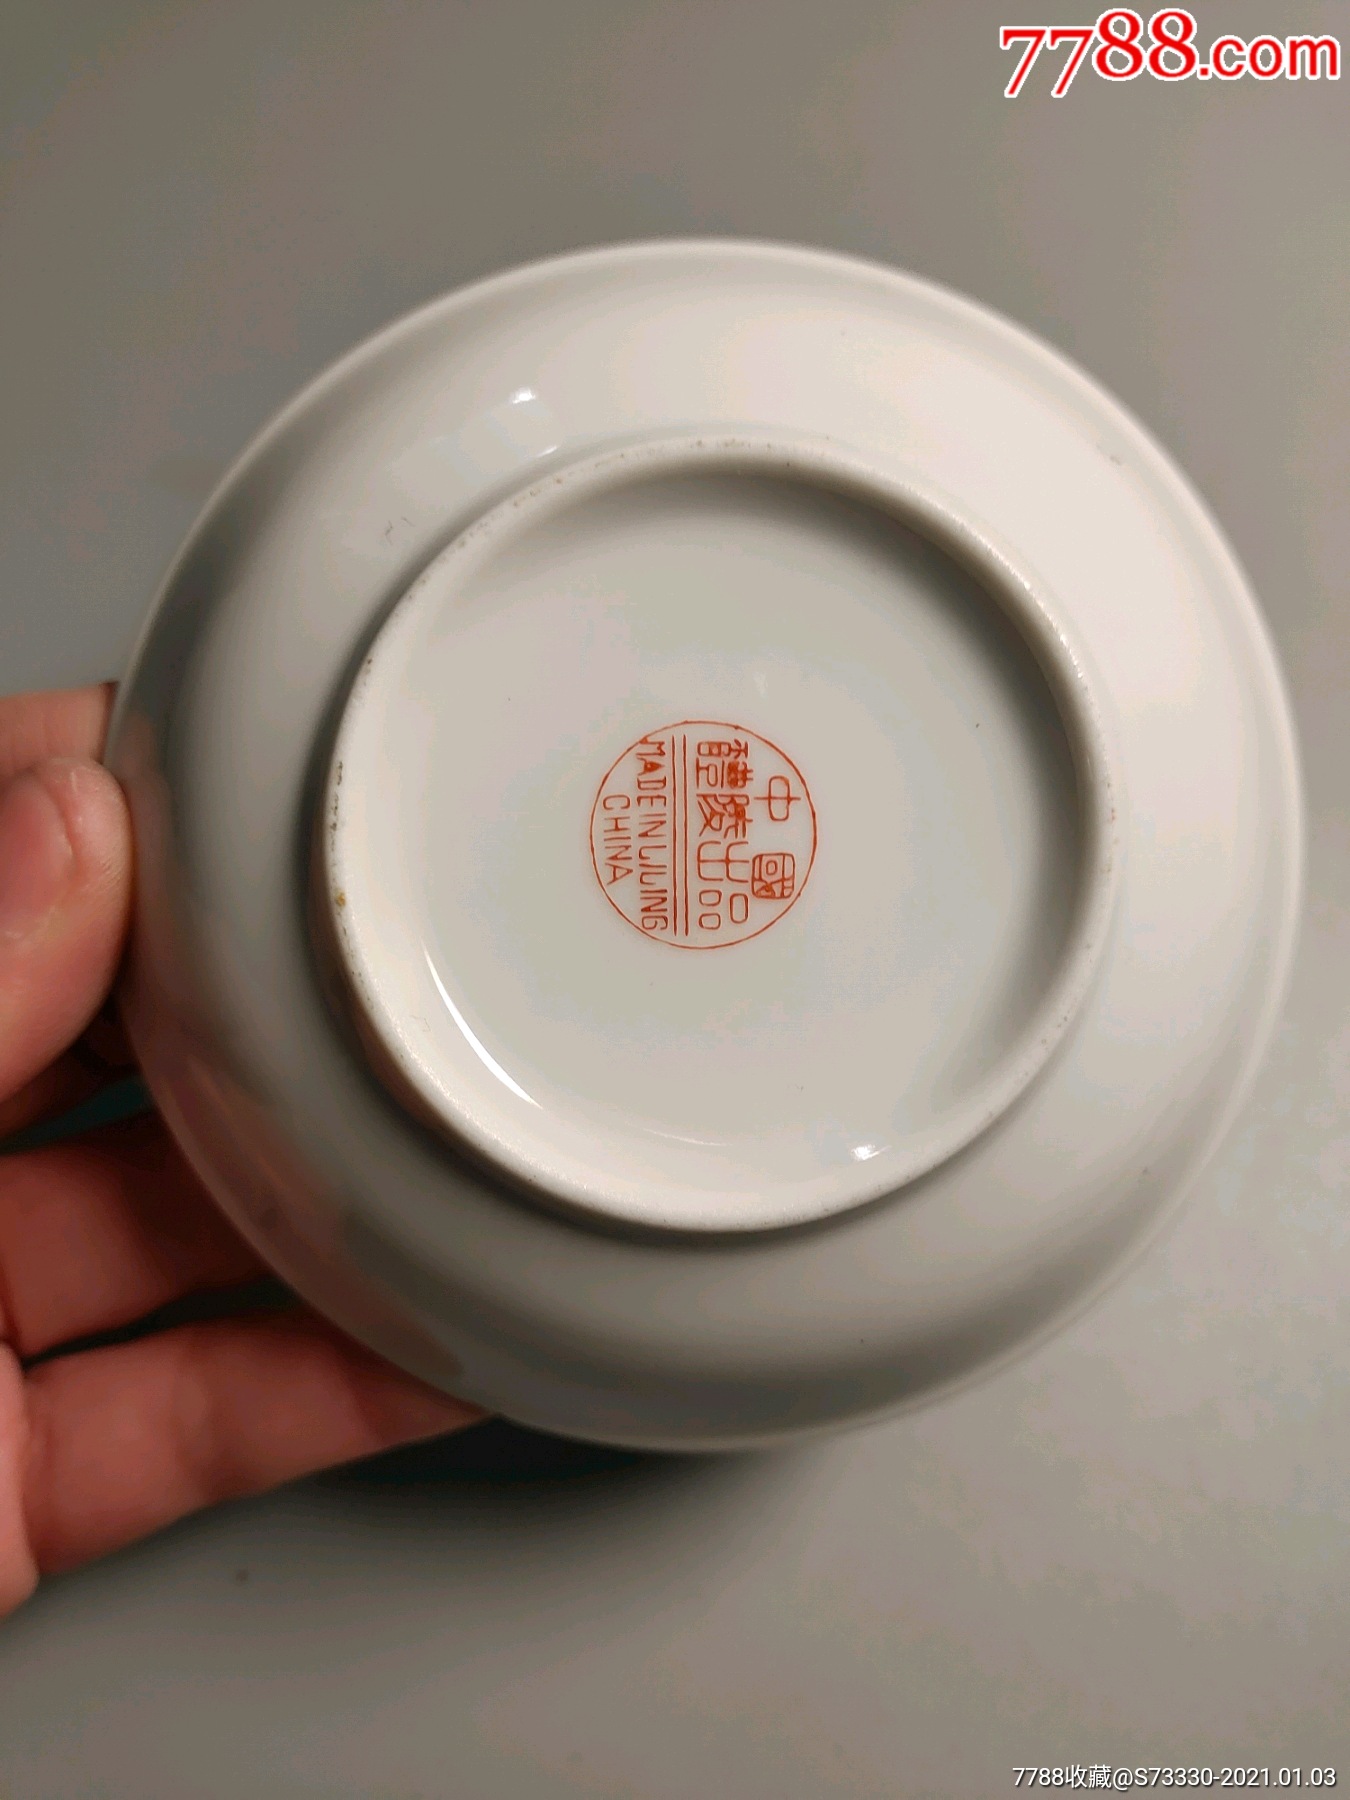 醴陵出口公司,茶碟一块